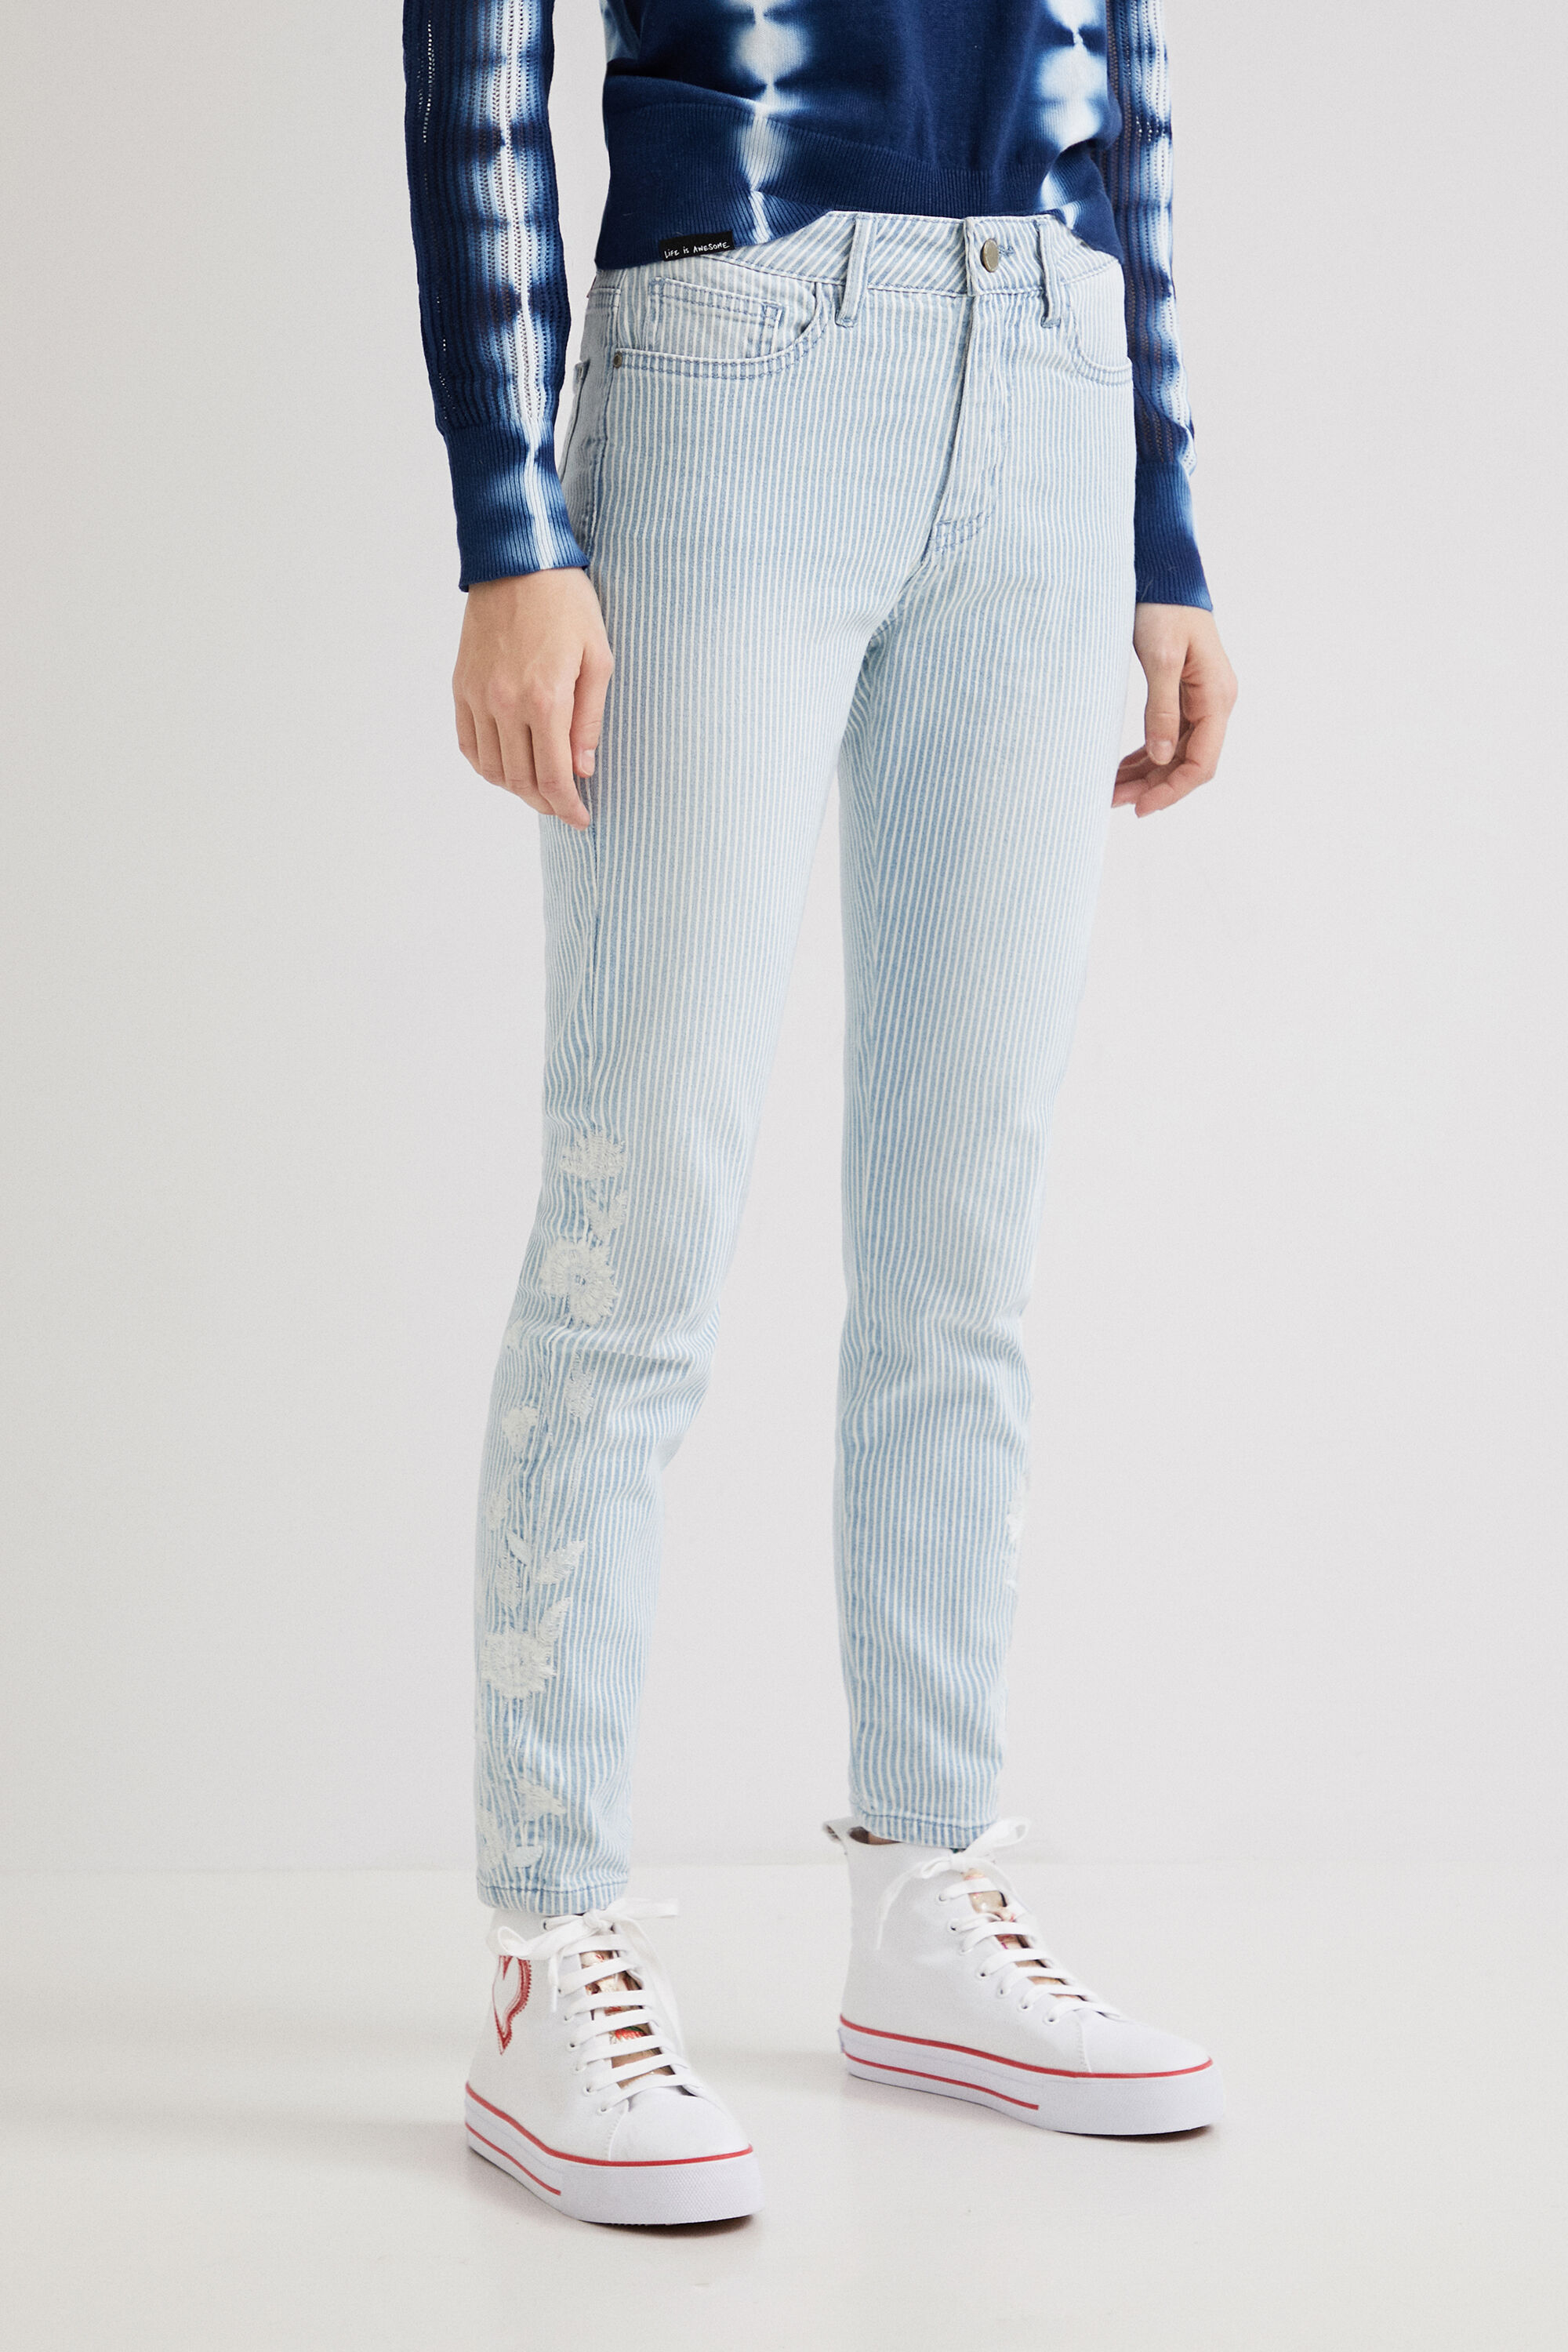 Hosen - Skinny Jeans mit Streifen  - Onlineshop Desigual